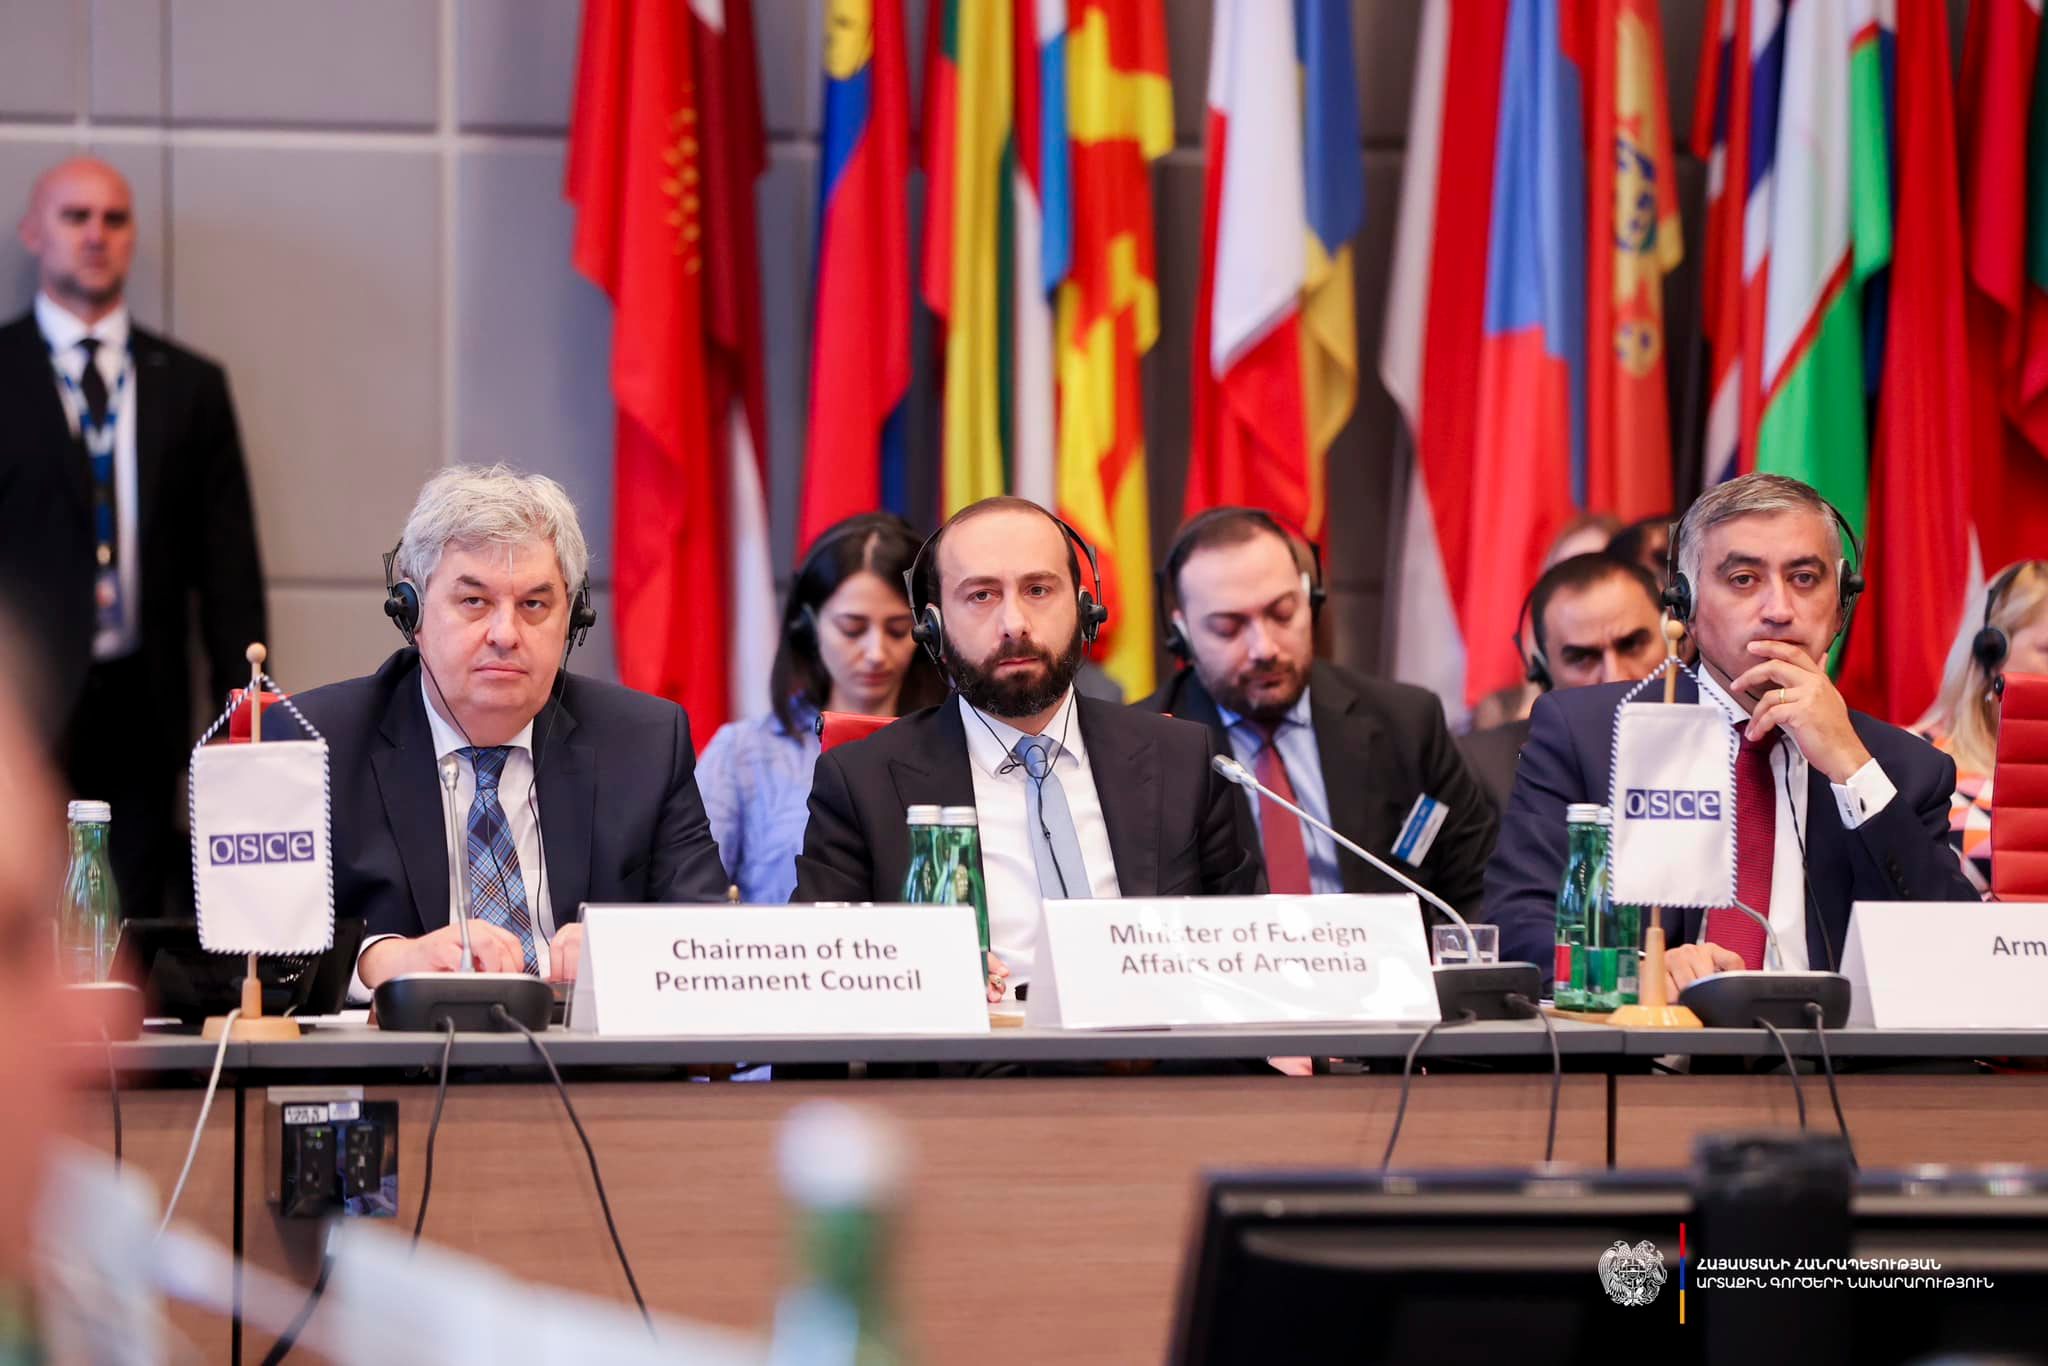 Ընթանում է Հայաստանի պահանջով հրավիրված ԵԱՀԿ մշտական խորհրդի հատուկ նիստը